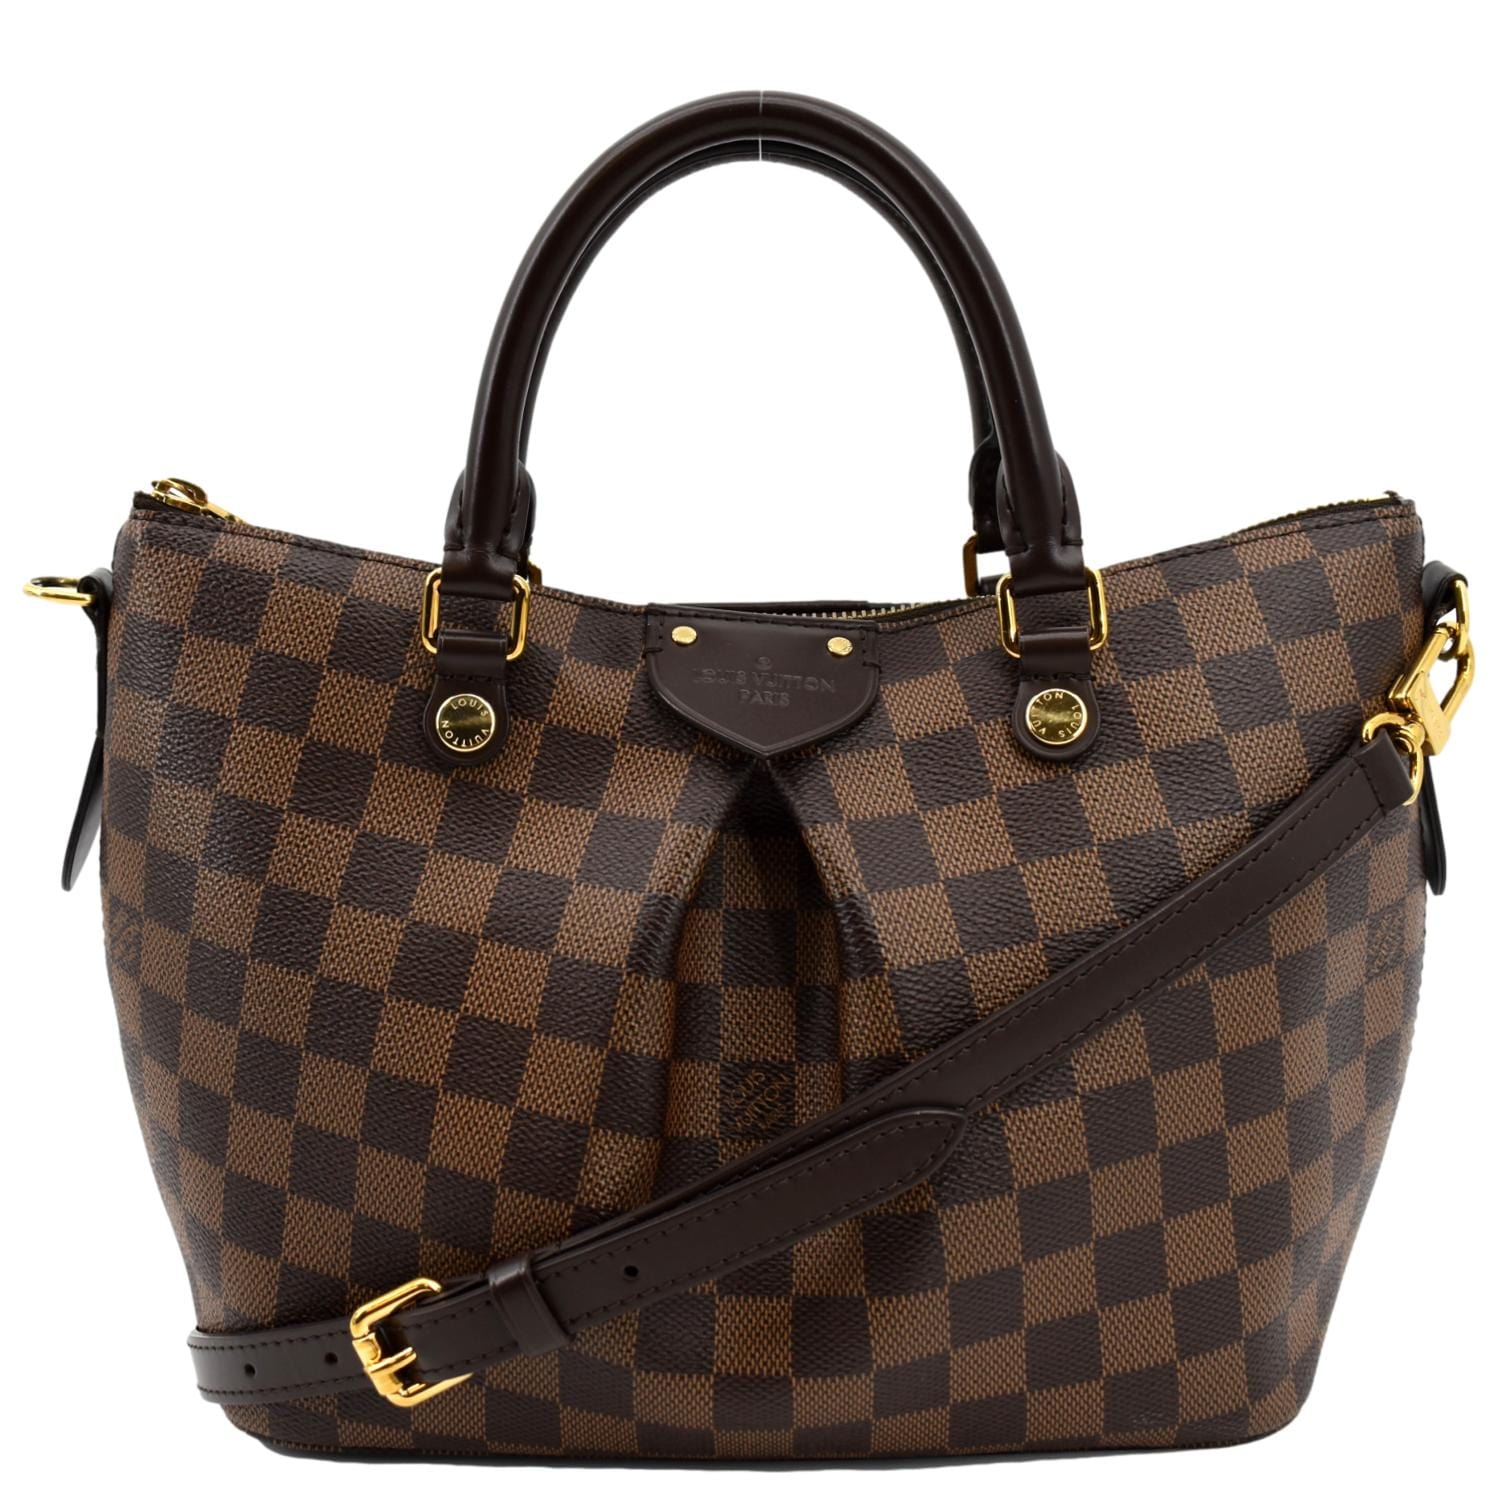 Authentic Louis Vuitton Damier Favorite PM 2Way Shoulder Bag